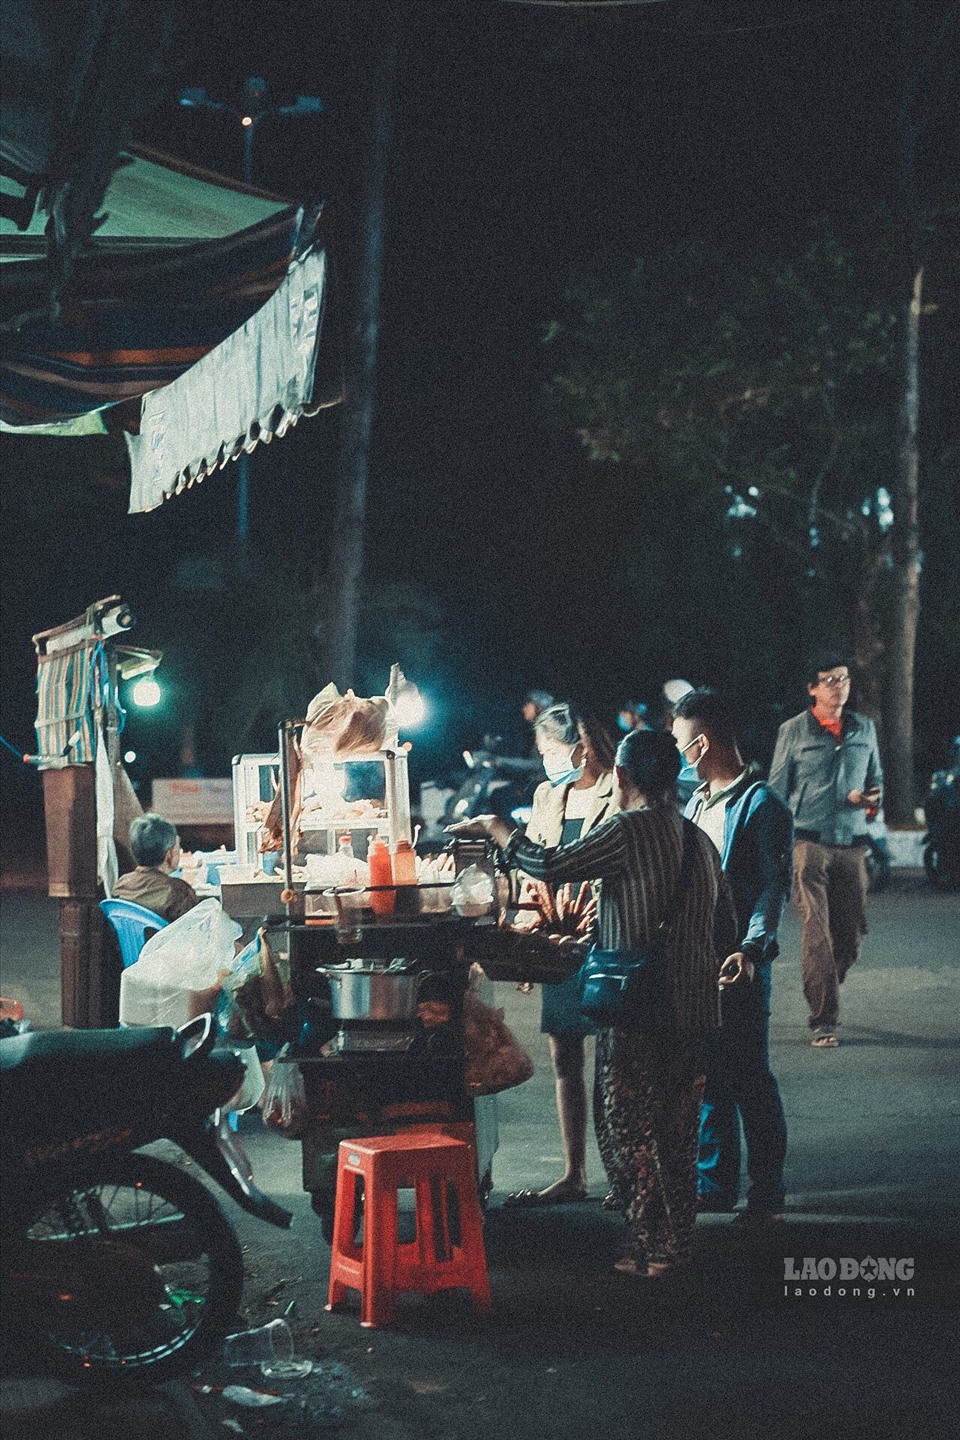 Đêm giao thừa: Đêm giao thừa tại Hà Nội là một trải nghiệm khó quên trong đời. Khắp phố phường, từ các căn hộ chung cư đến những công viên, tất cả đều tràn ngập ánh đèn rực rỡ, âm nhạc và tiếng cười vui tươi của người dân đón Tết.